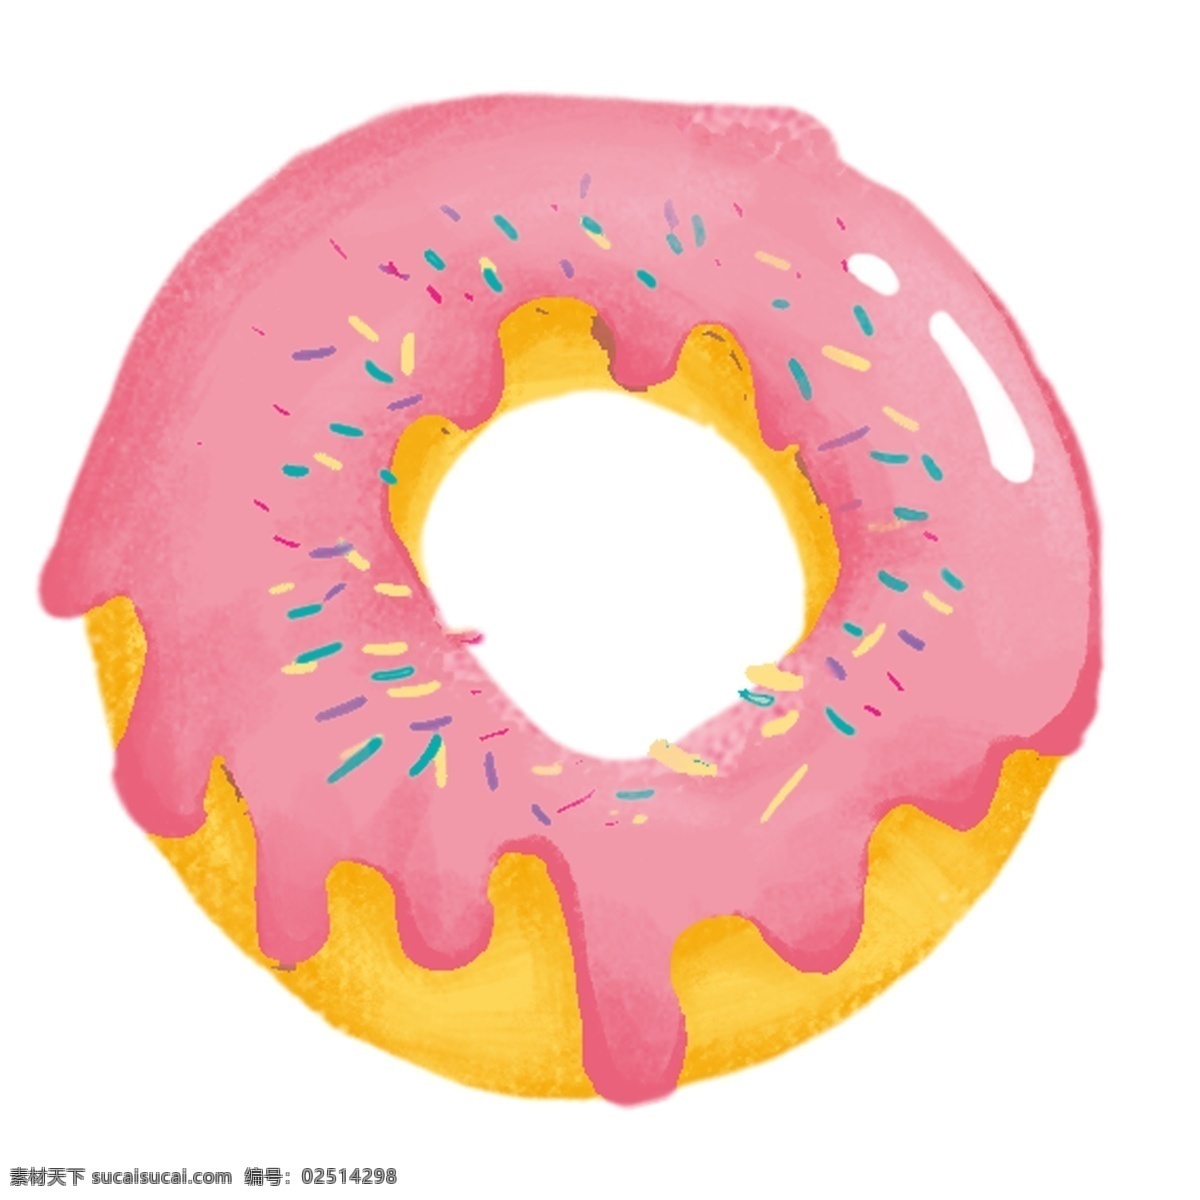 手绘 插图 粉色 美食 甜甜 圈 甜甜圈 元素